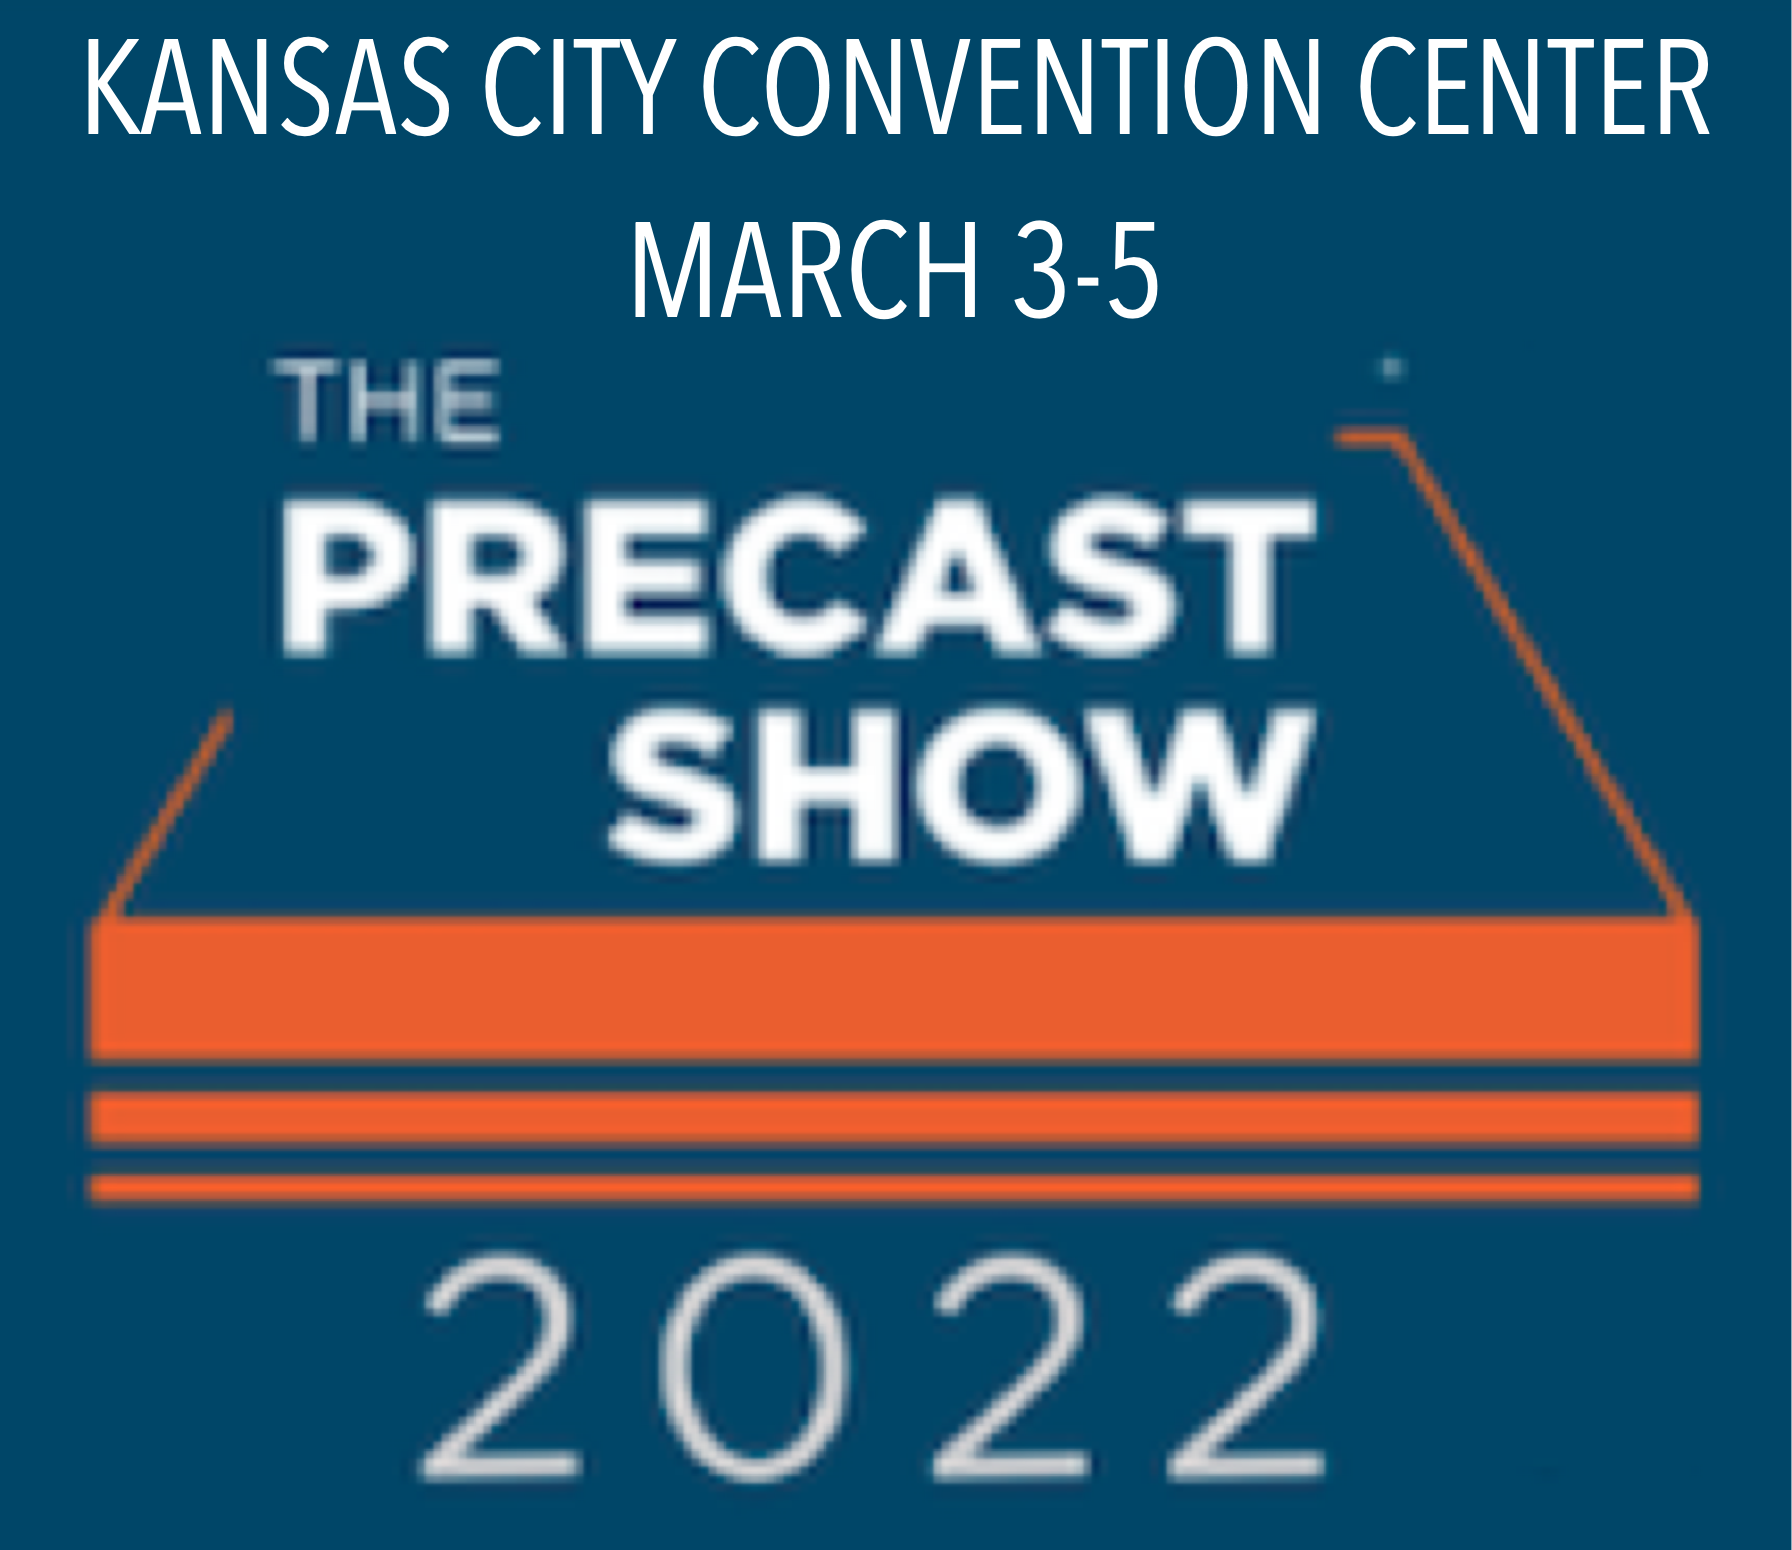 The Precast Show 2022